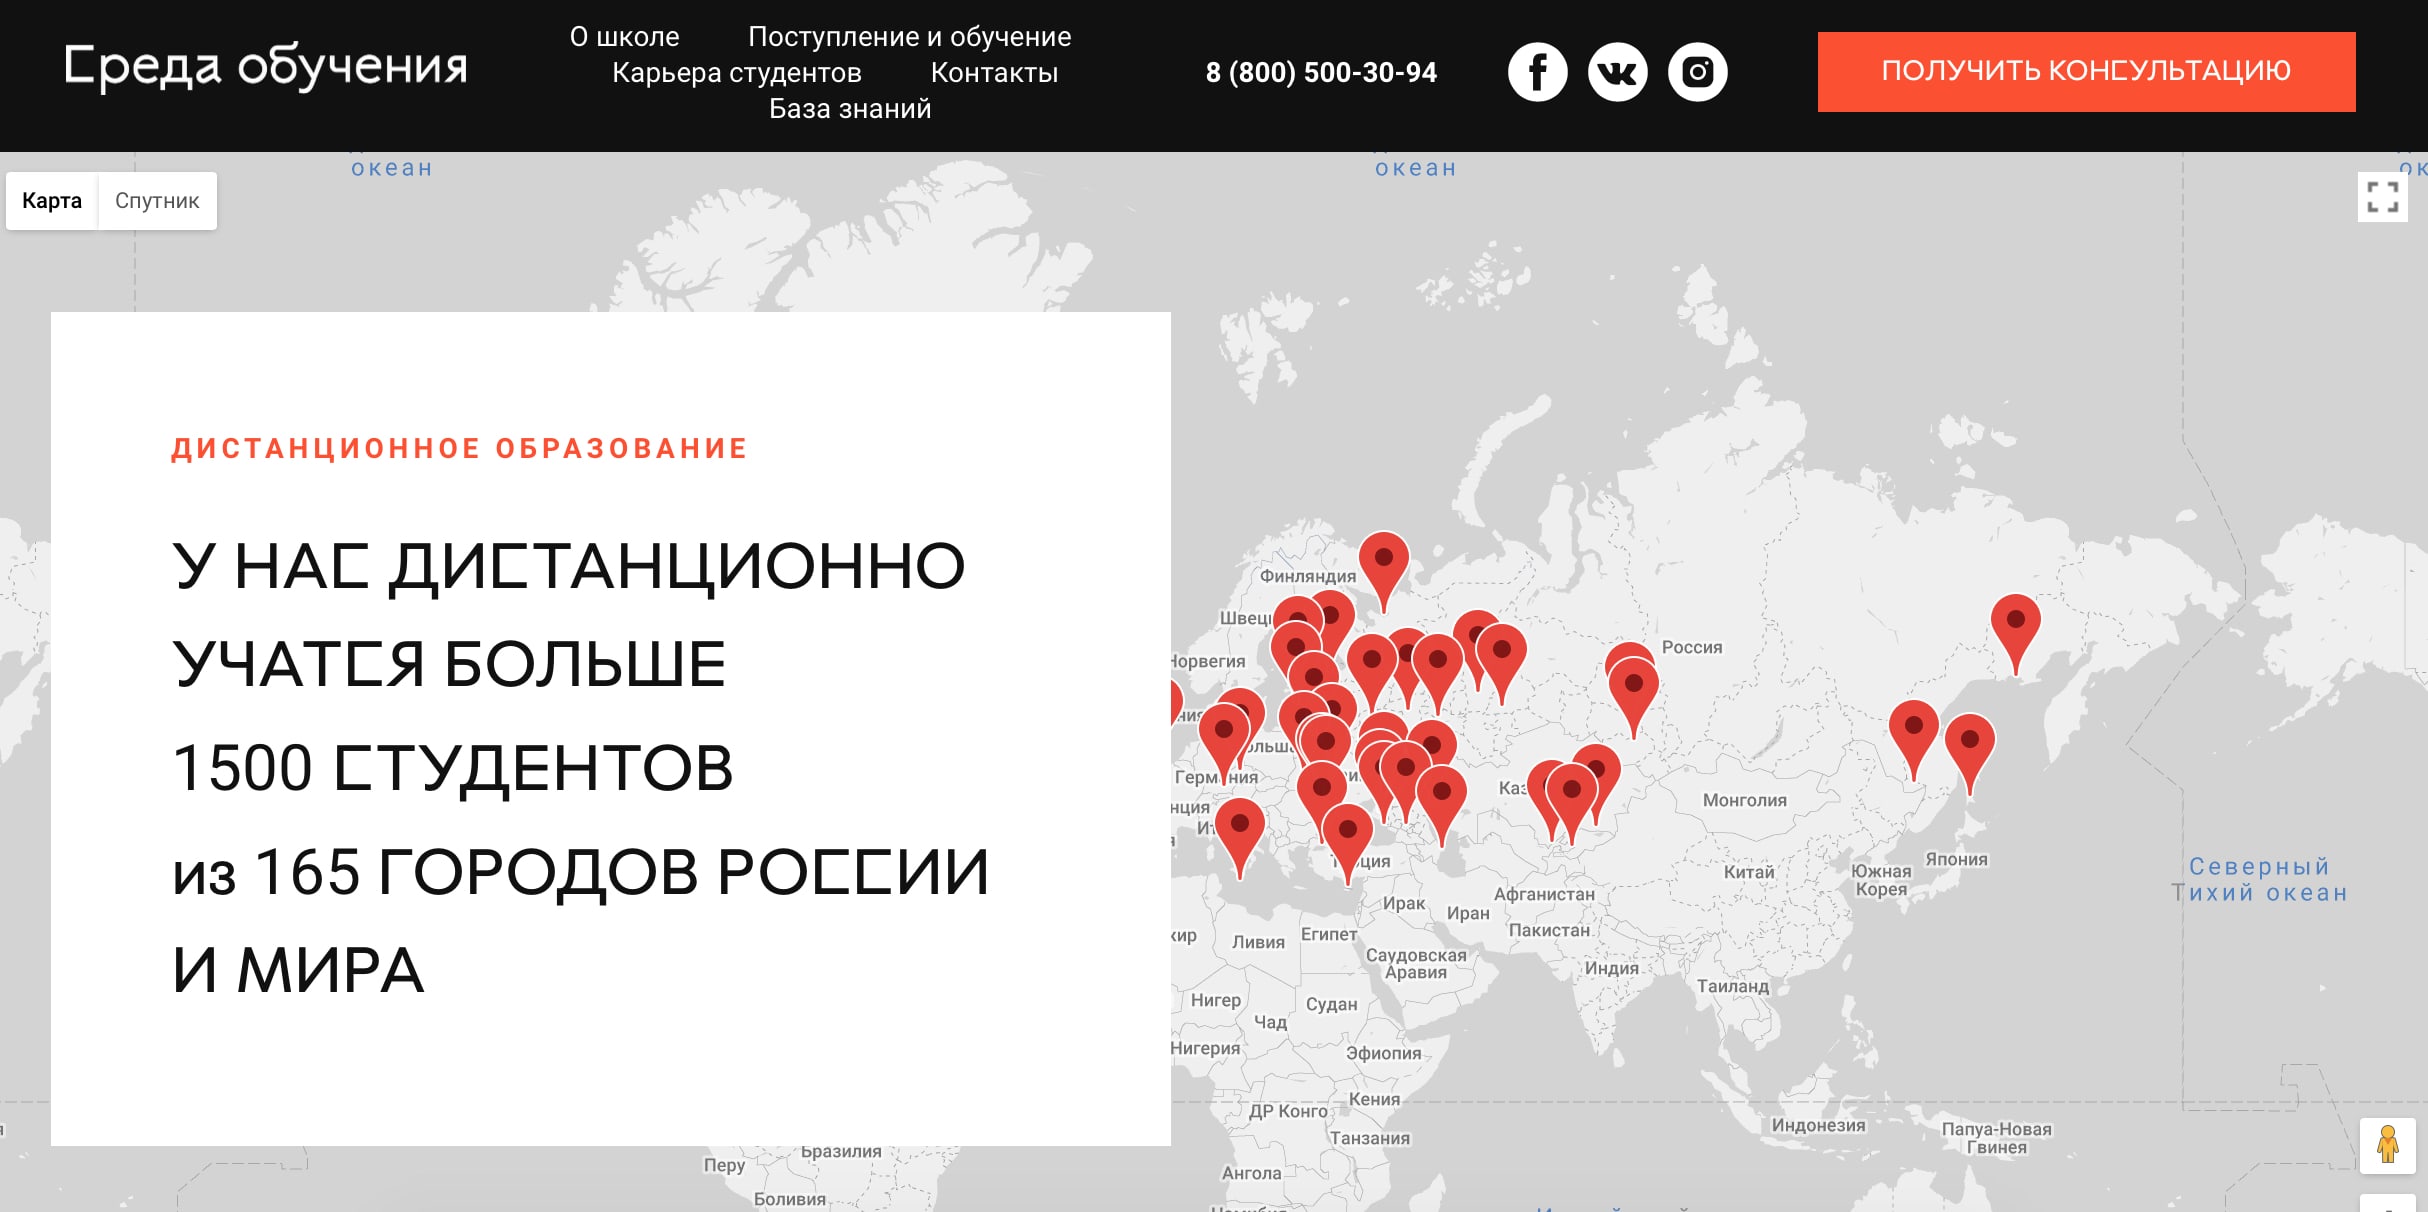 Среда Обучения (sredaobuchenia.ru), скриншот интерфейса 1